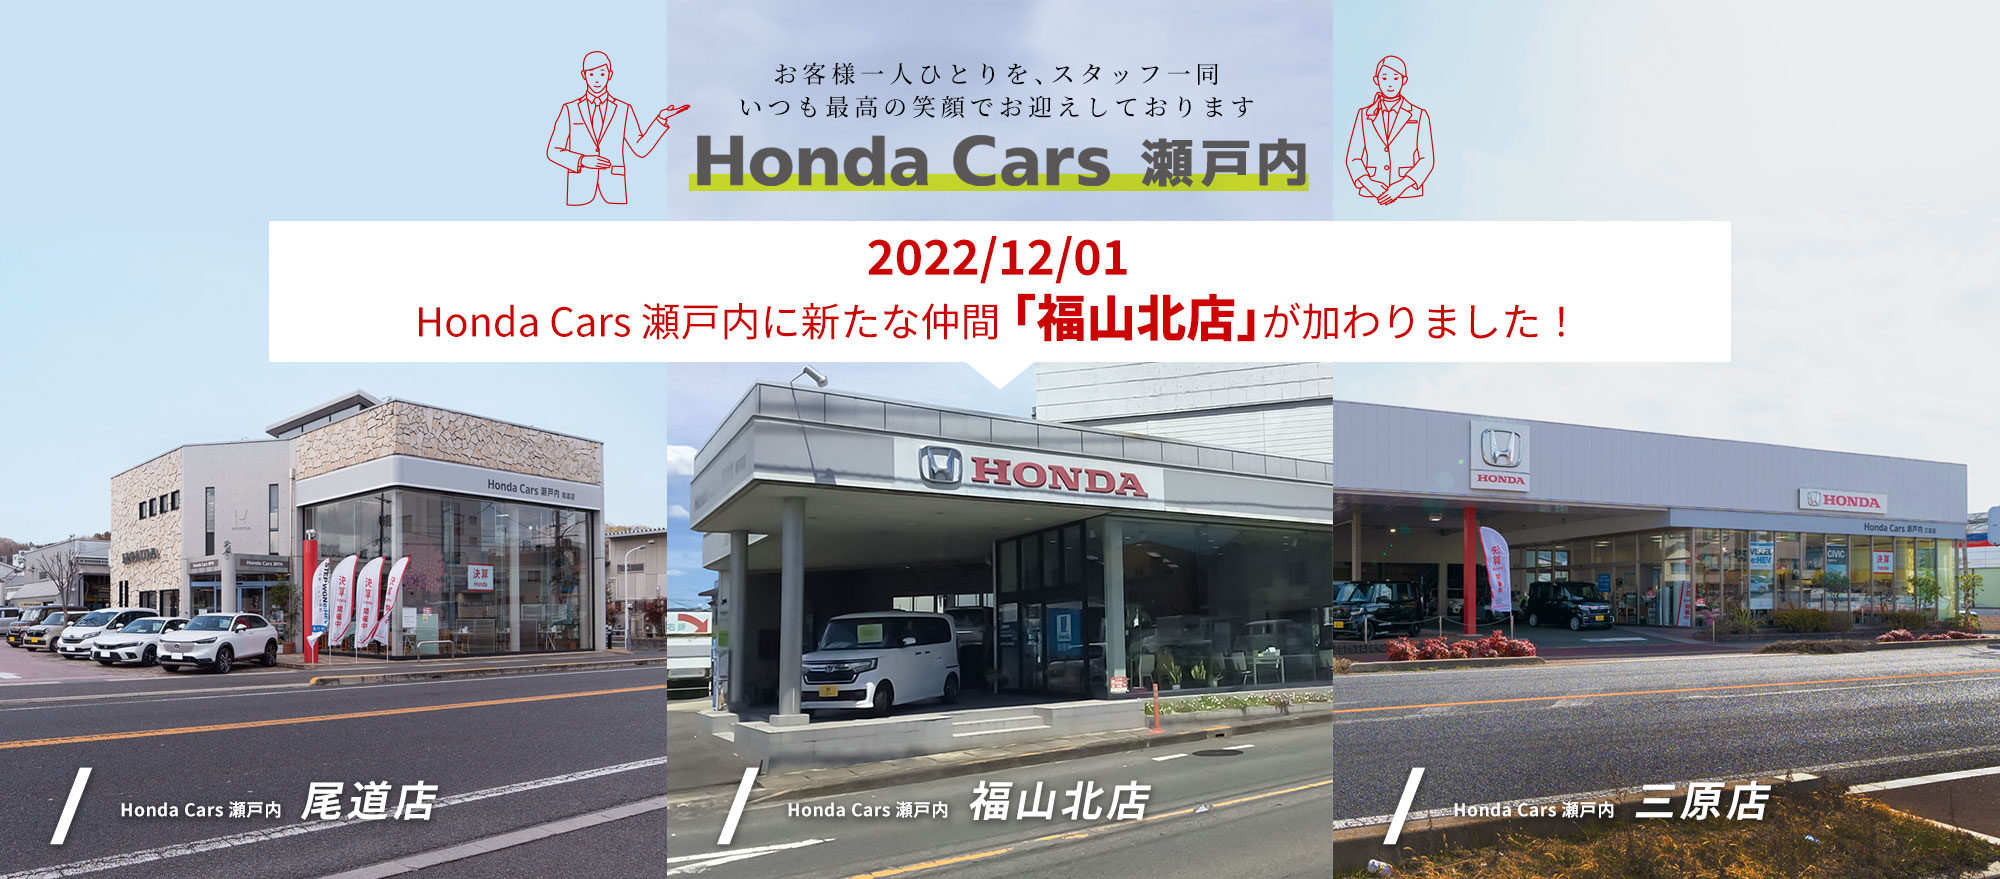 お客様一人ひとりを、スタッフ一同いつも最高の笑顔でお迎えしております「Honda Cars 瀬戸内」